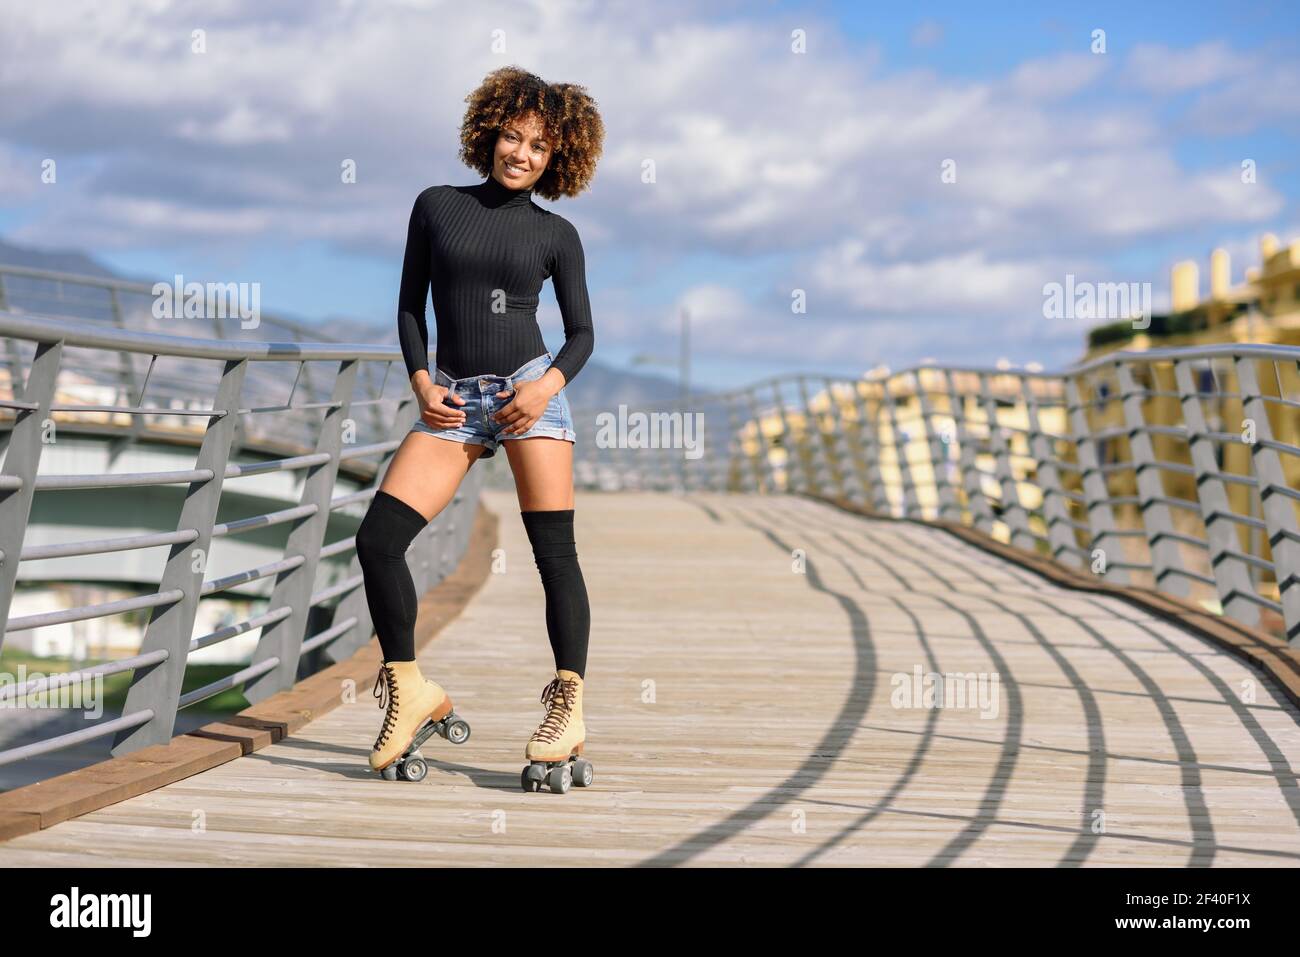 Femme noire, coiffure afro, équitation sur patins à l'extérieur sur le pont urbain à bras ouverts. Souriante jeune femme à roues alignées sur un jour ensoleillé. De beaux nuages dans le ciel. Banque D'Images